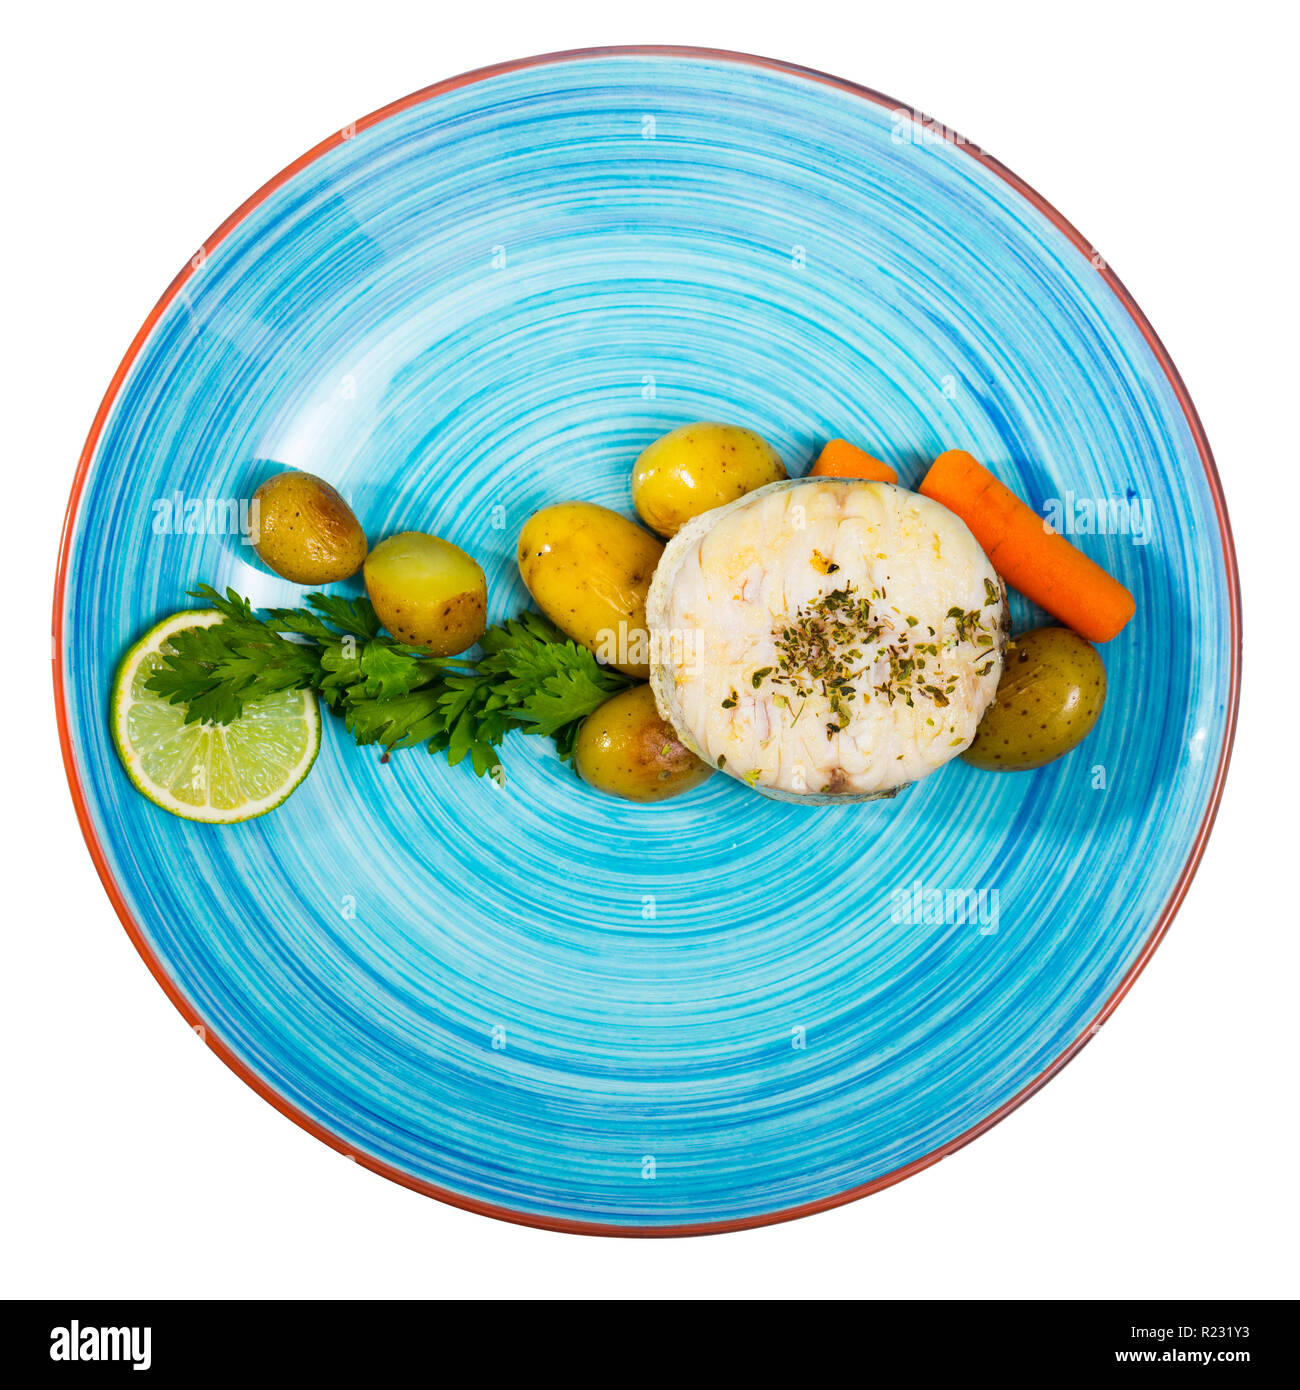 Blick von oben auf die Land Art merluccius serviert auf blaue Platte mit gekochten Kartoffeln, Karotten und Grünen. Auf weissem Hintergrund Stockfoto